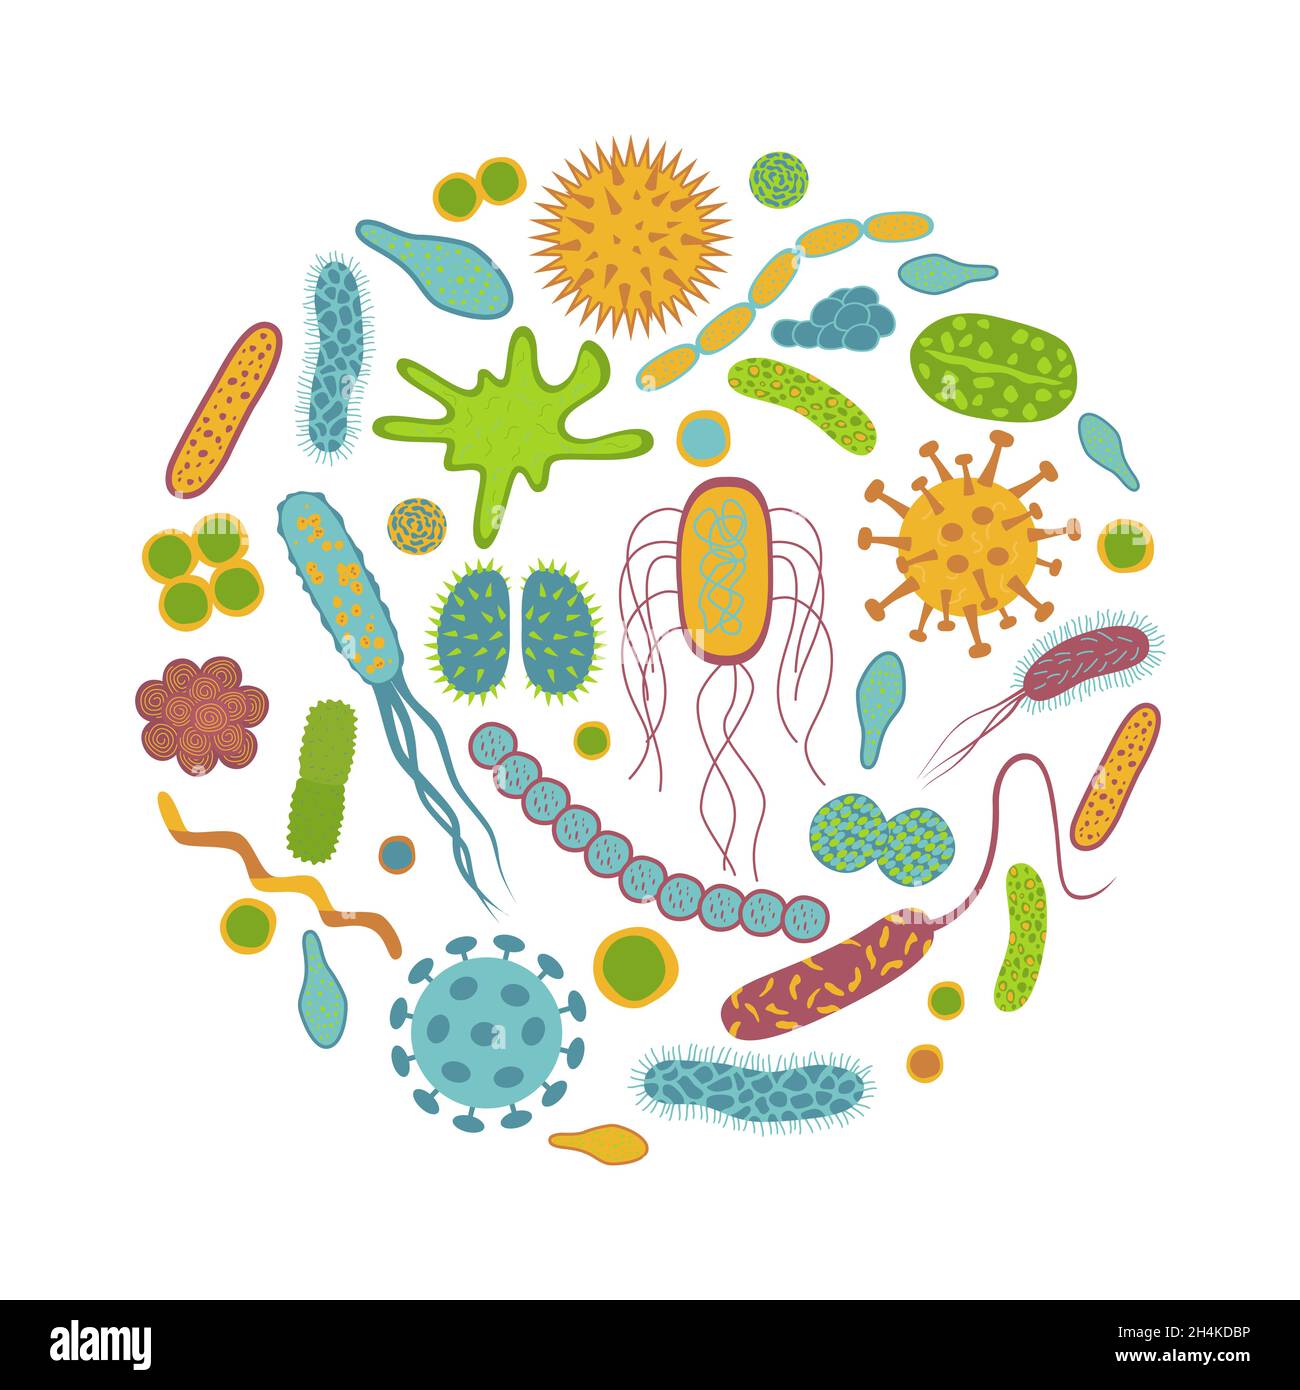 Symbole für Keime und Bakterien auf weißem Hintergrund isoliert. Mikrobiom im flachen Cartoon-Stil. Rundes Design Vektor-Illustration von Mikroorganismen. Stock Vektor